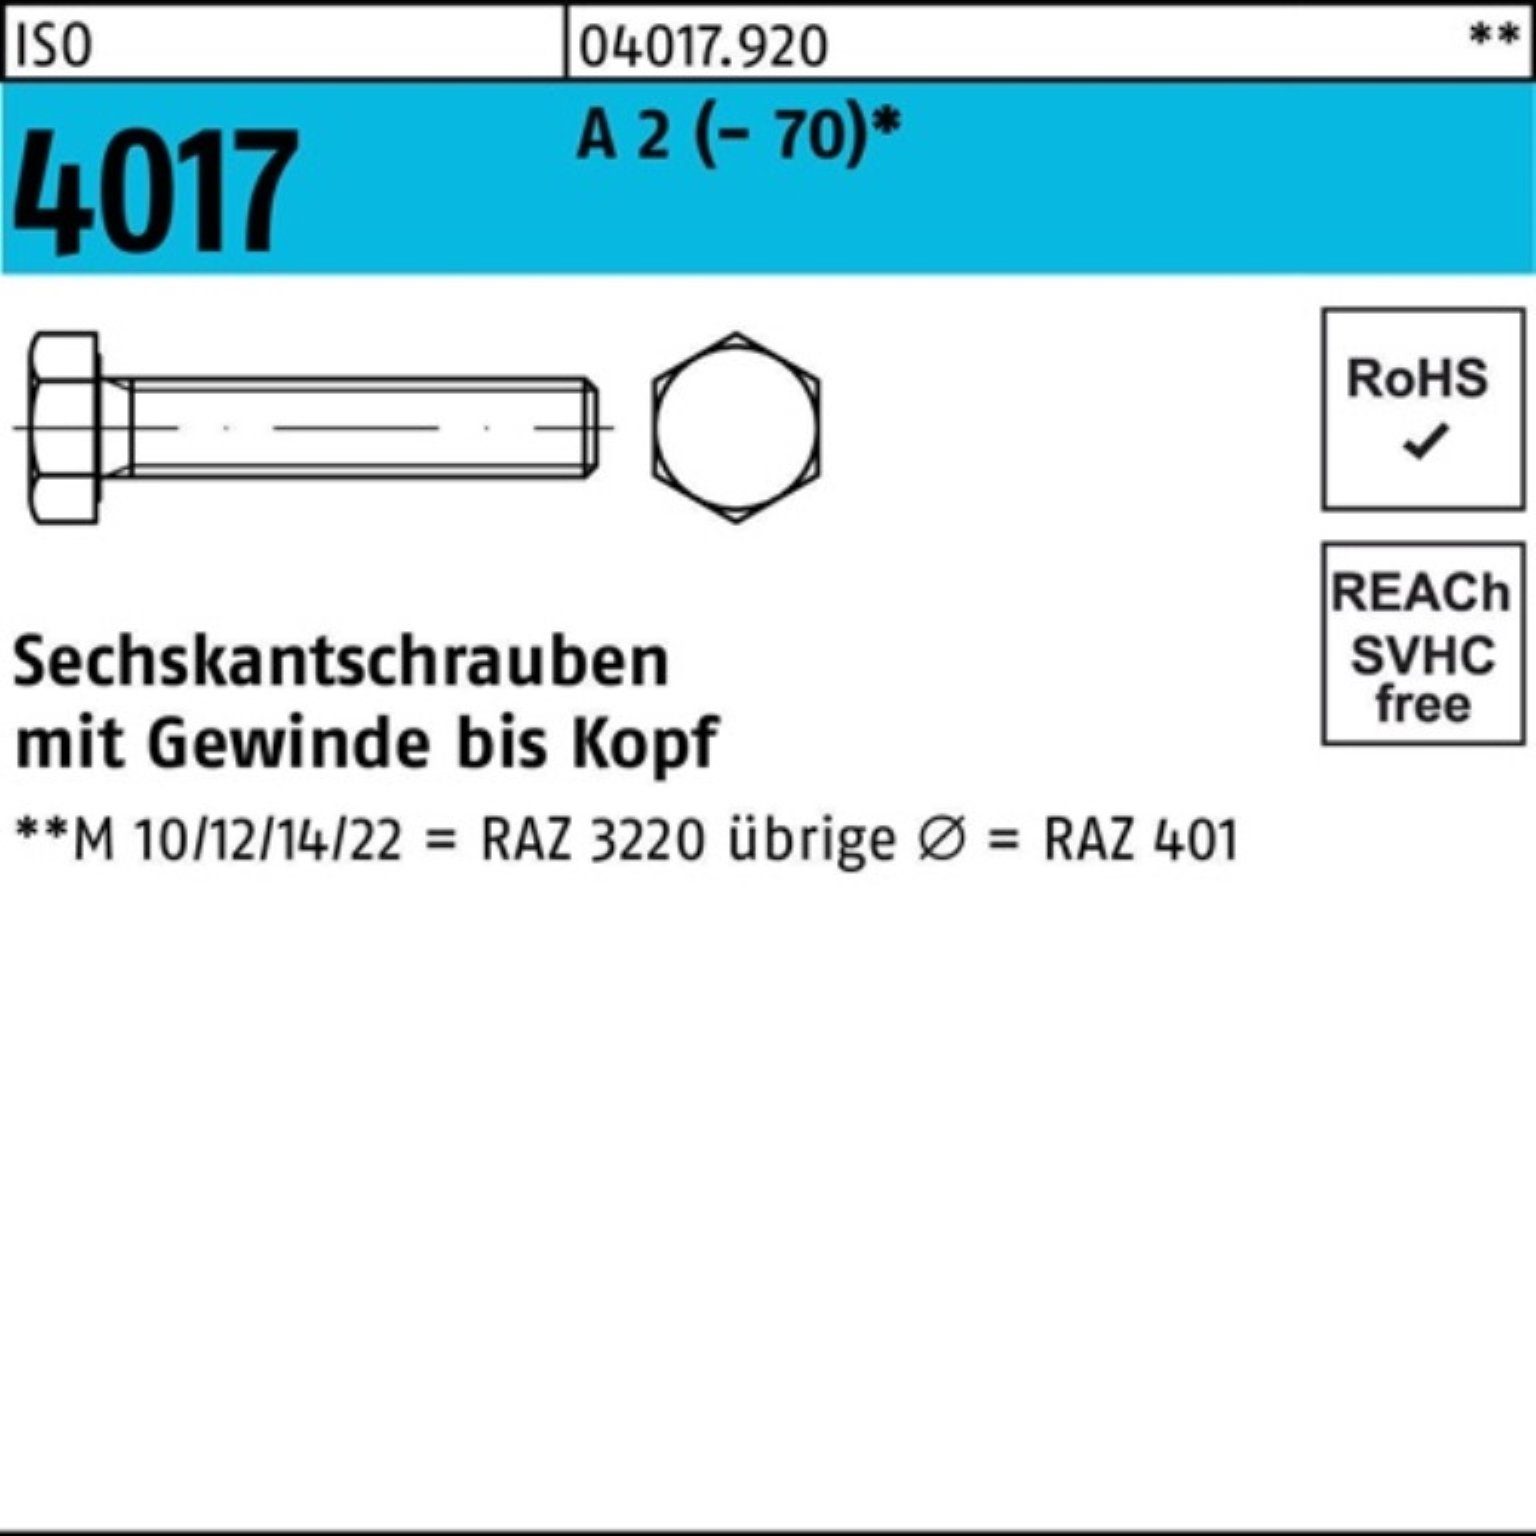 Bufab Sechskantschraube 100er Pack Sechskantschraube ISO 4017 VG M30x 110 A 2 (70) 1 Stück